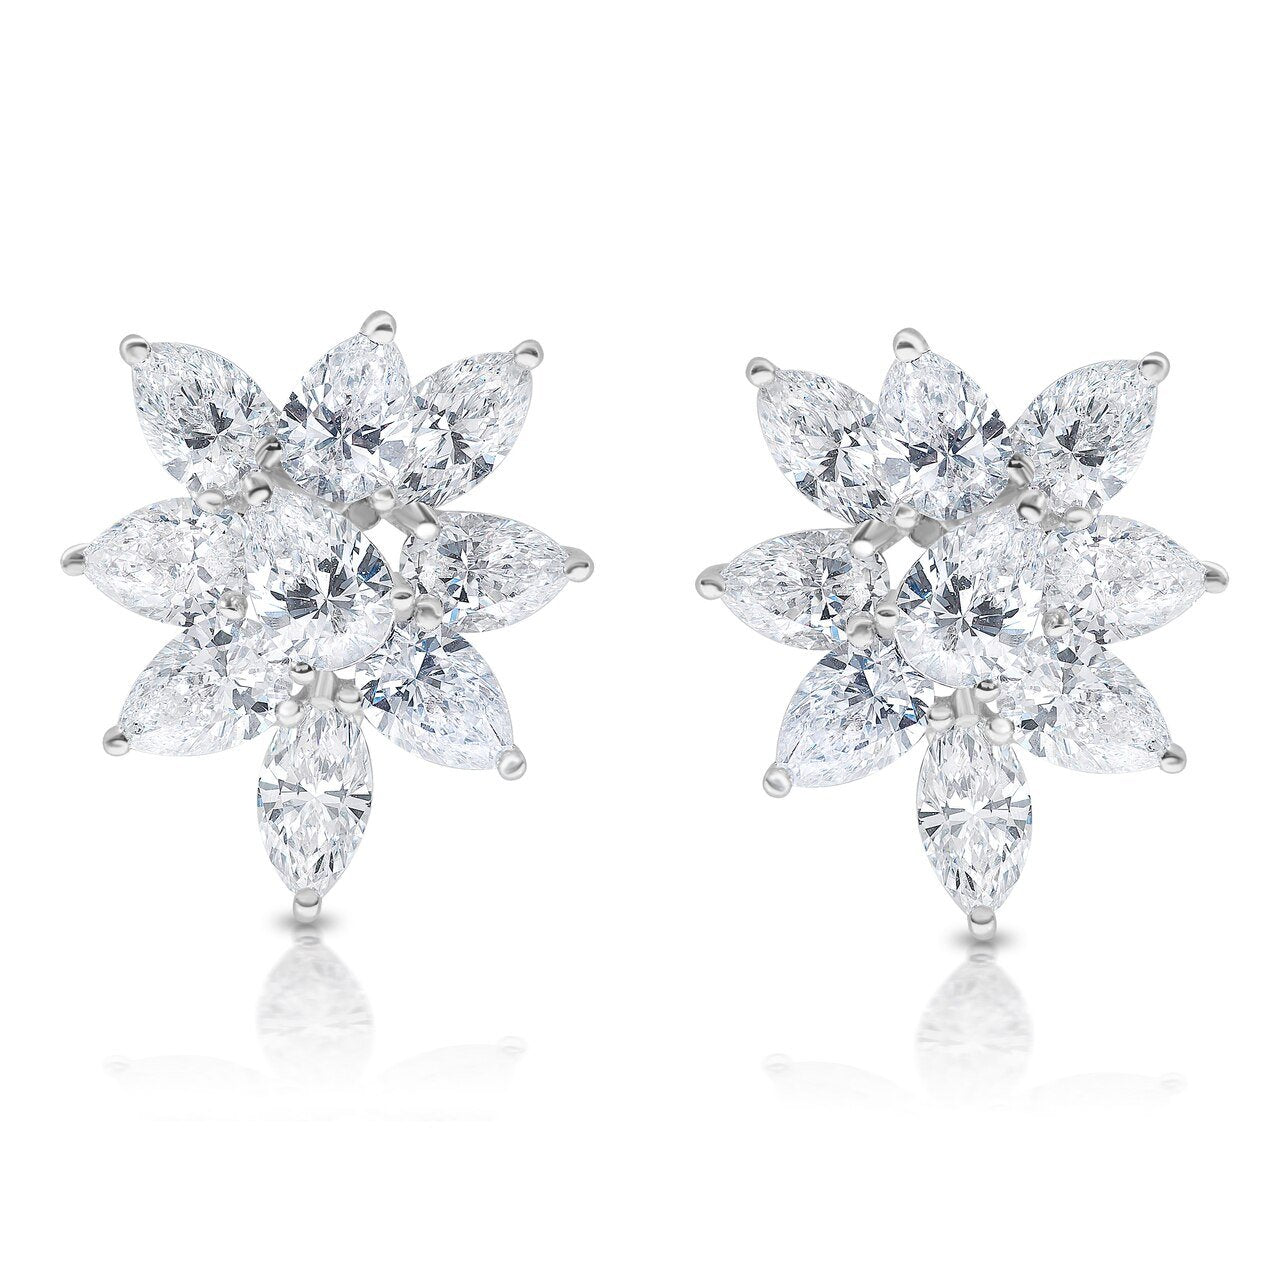 Fancy Shape Diamond Cluster Earrings in Medium